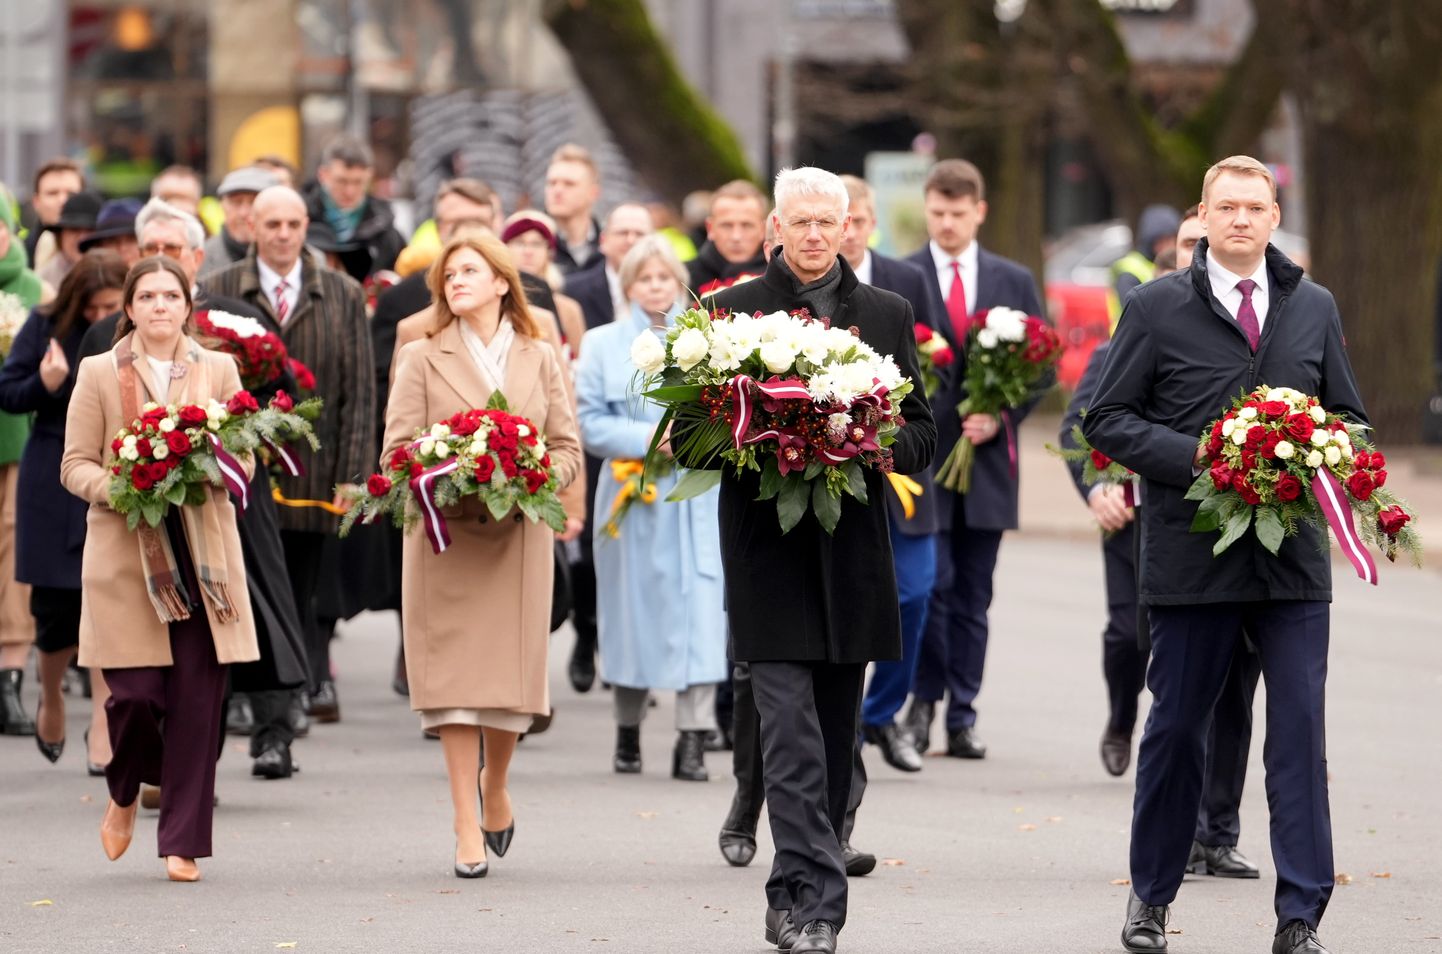 Saeimas priekšsēdētājs Edvards Smiltēns, Ministru prezidents Krišjānis Kariņš, Saeimas priekšsēdētāja biedre Zanda Kalniņa-Lukaševica un Saeimas sekretāra biedre Antoņina Ņenaševa piedalās svinīgajā ziedu nolikšanas ceremonijā, atzīmējot Saeimas simtgadi.